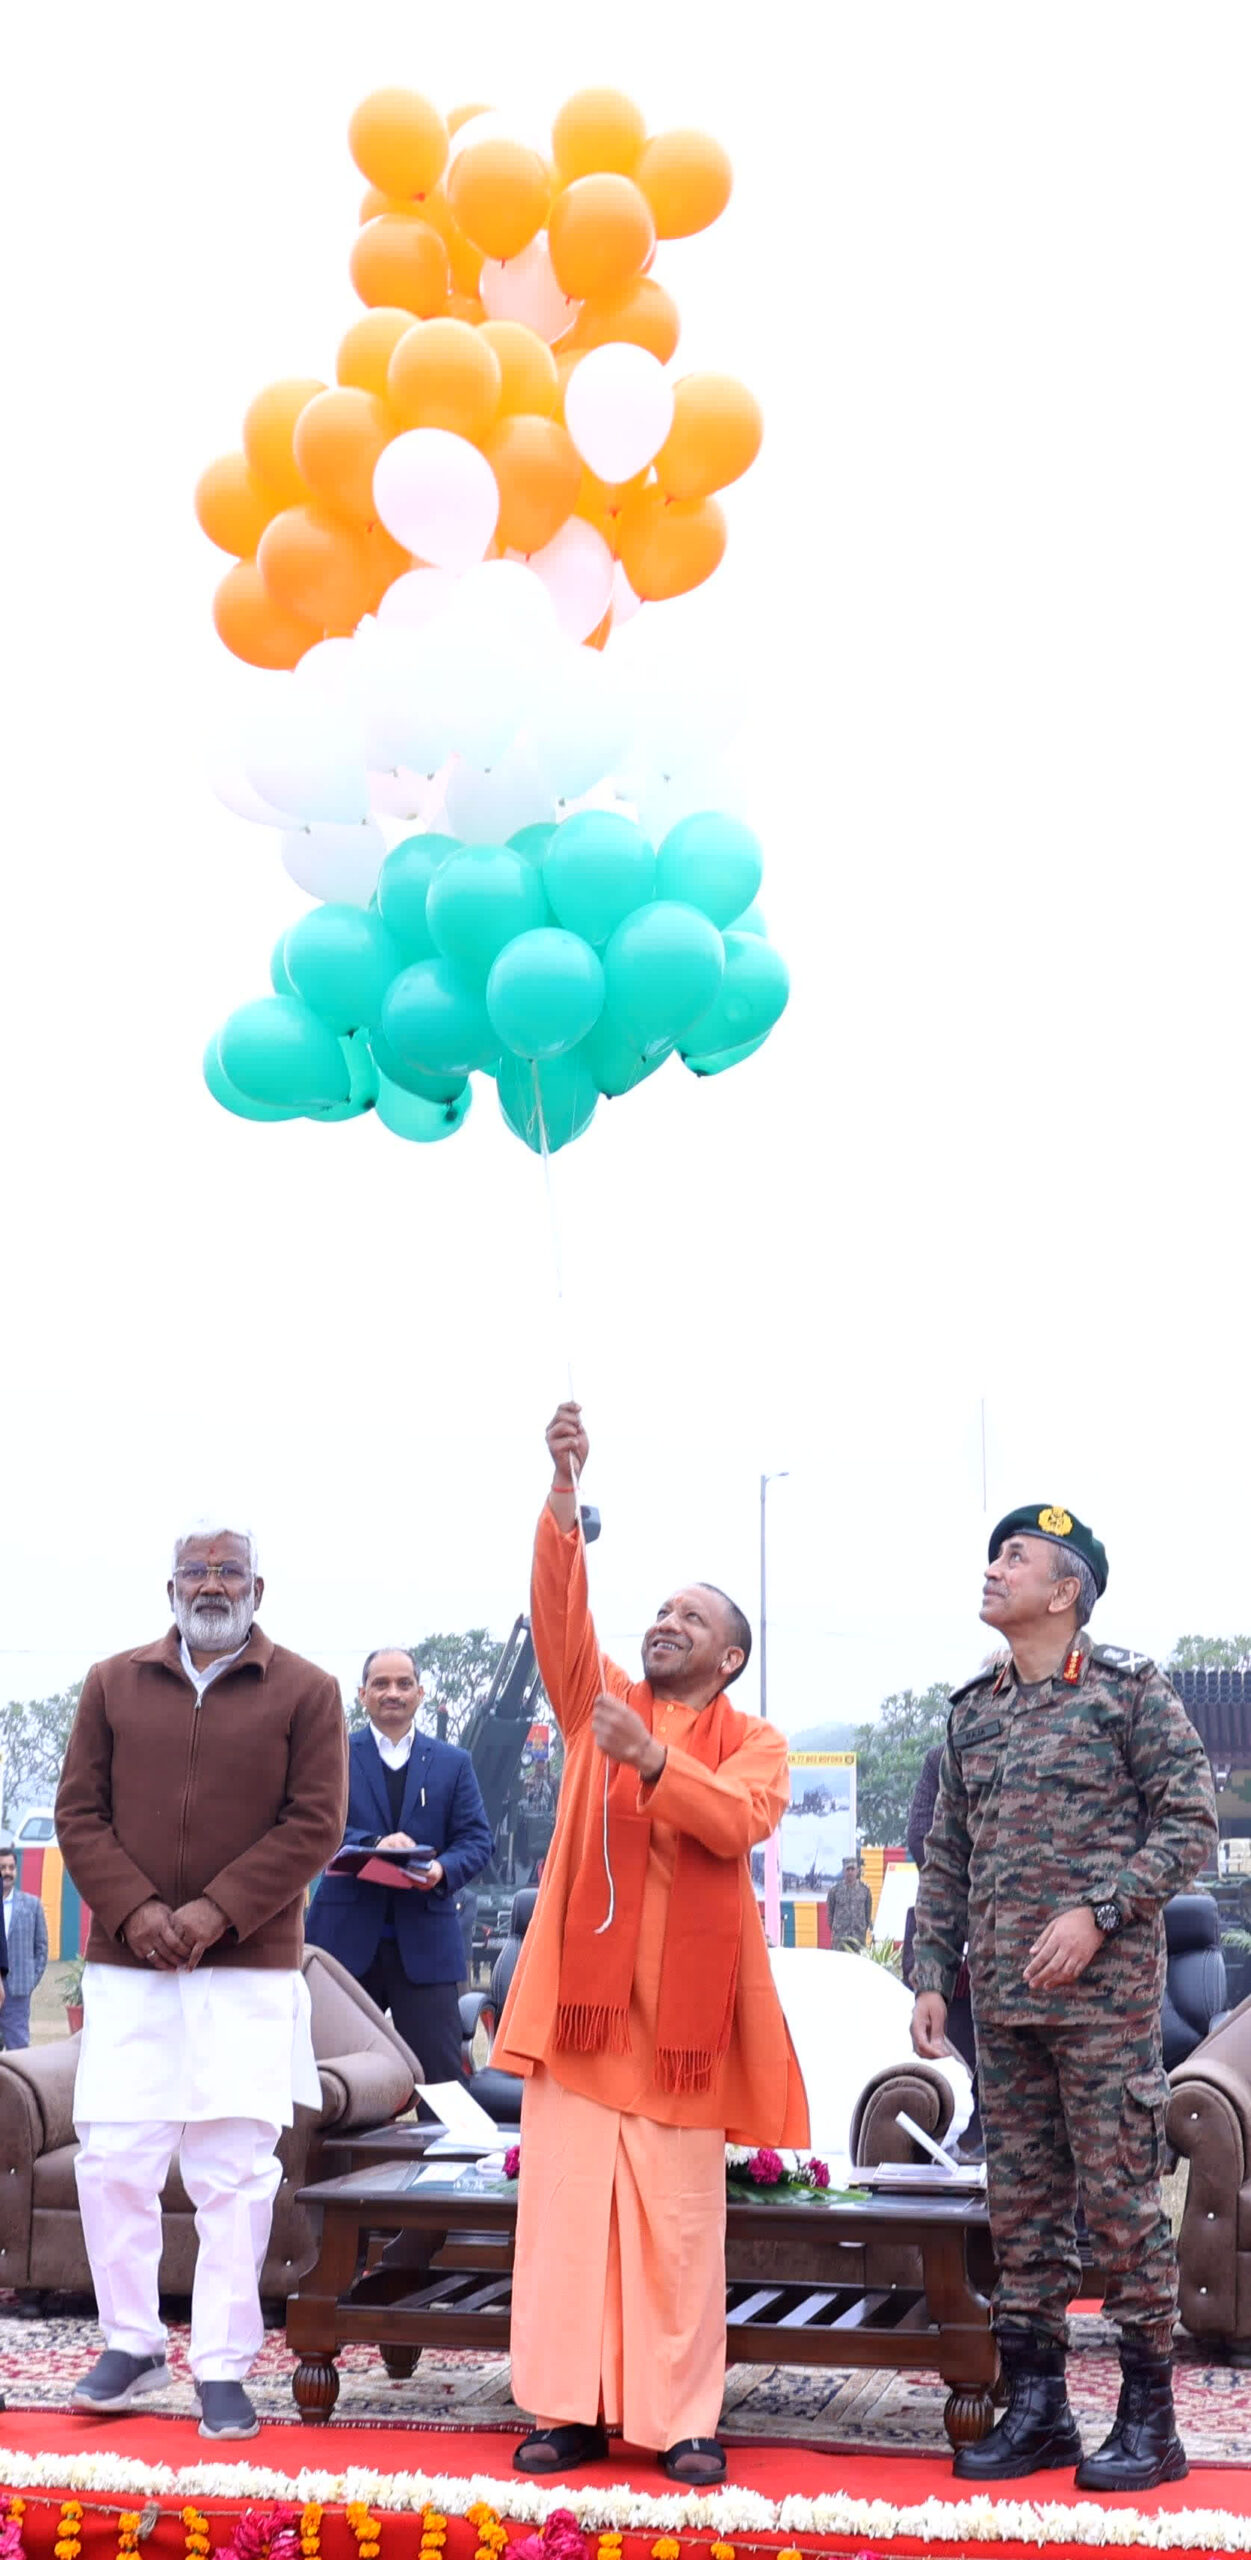 मुख्यमंत्री ने रंगबिरंगे गुब्बारे आसमान में उड़ाकर फेस्टिवल का औपचारिक उद्घाटन किया।